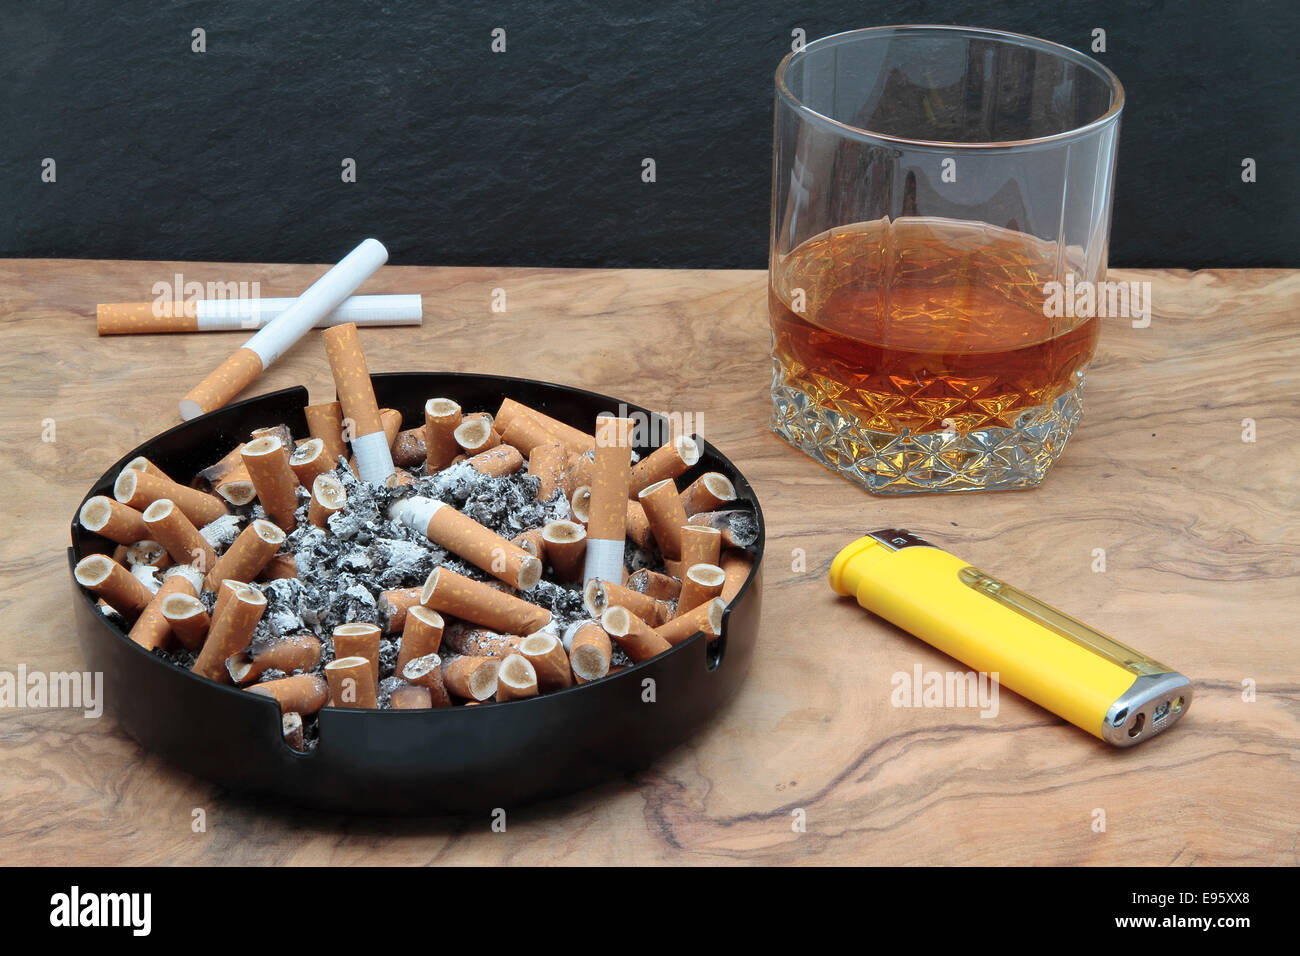 tabaco de liar, cenicero, boquillas y un cigarro encendido Stock Photo